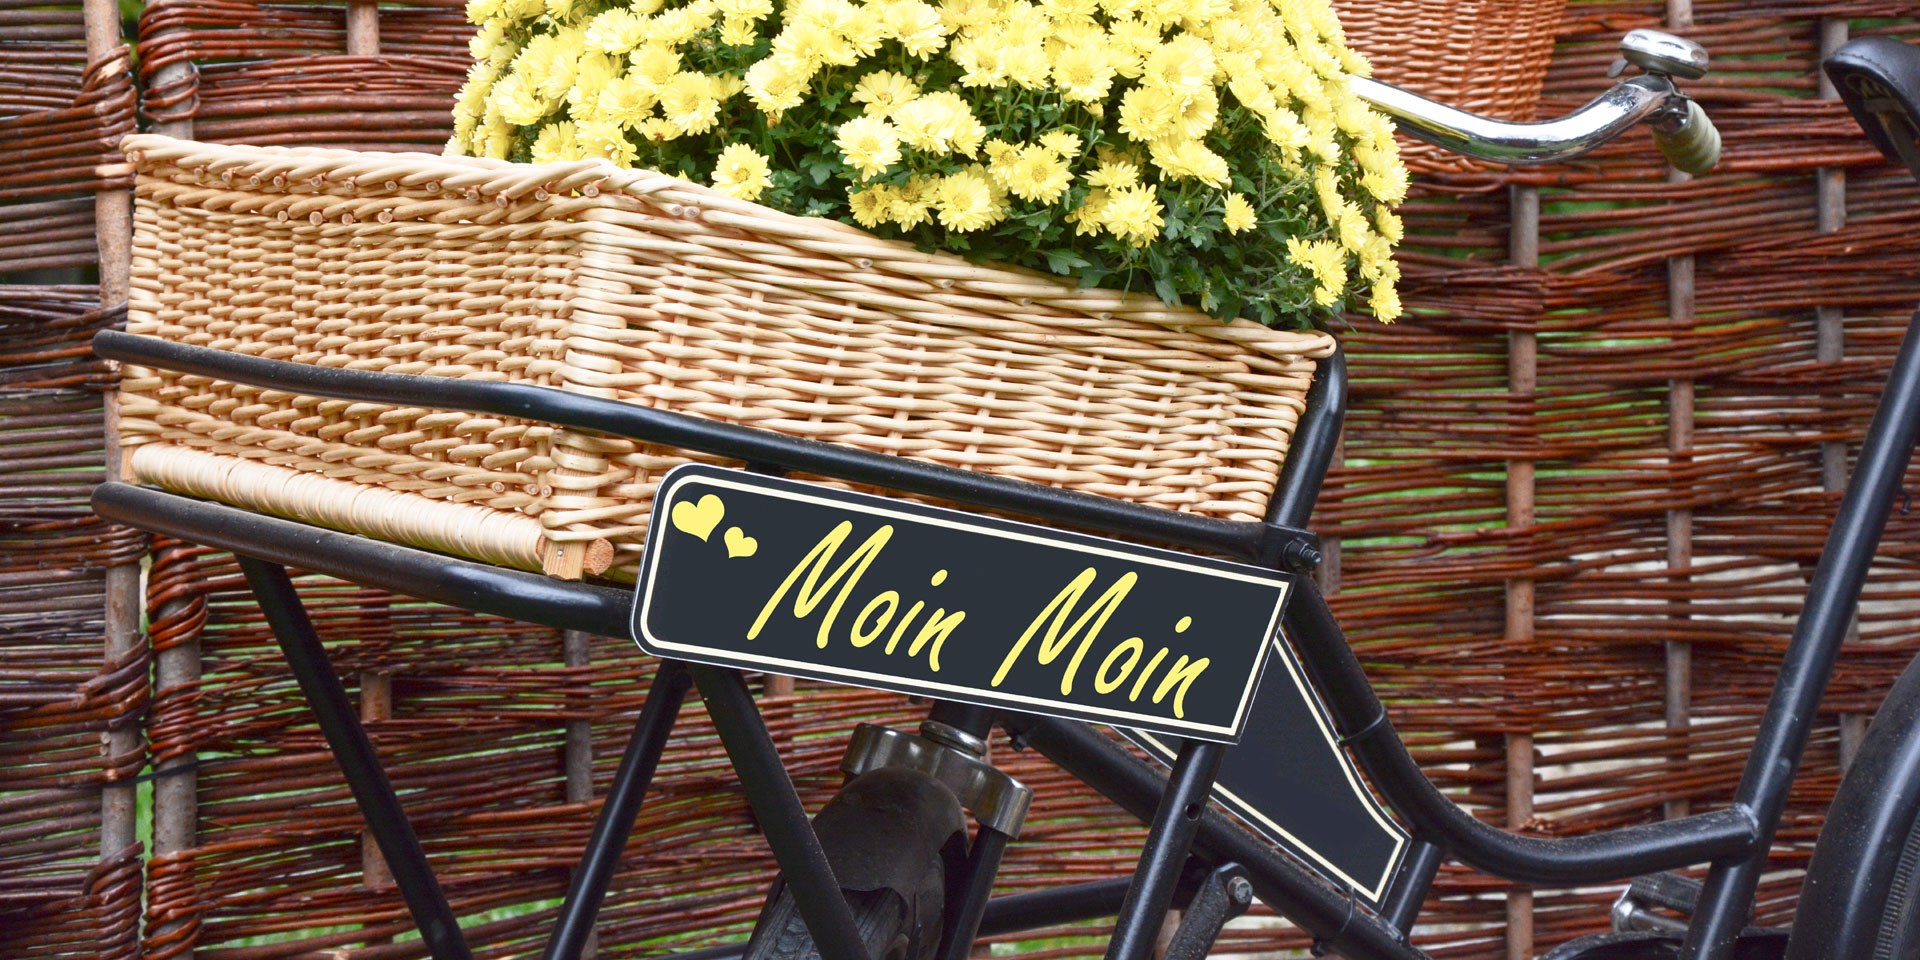 Fahrrad mit einem Schild, auf dem die typische Begrüßung Moin steht, © Fotolia / Marco2811